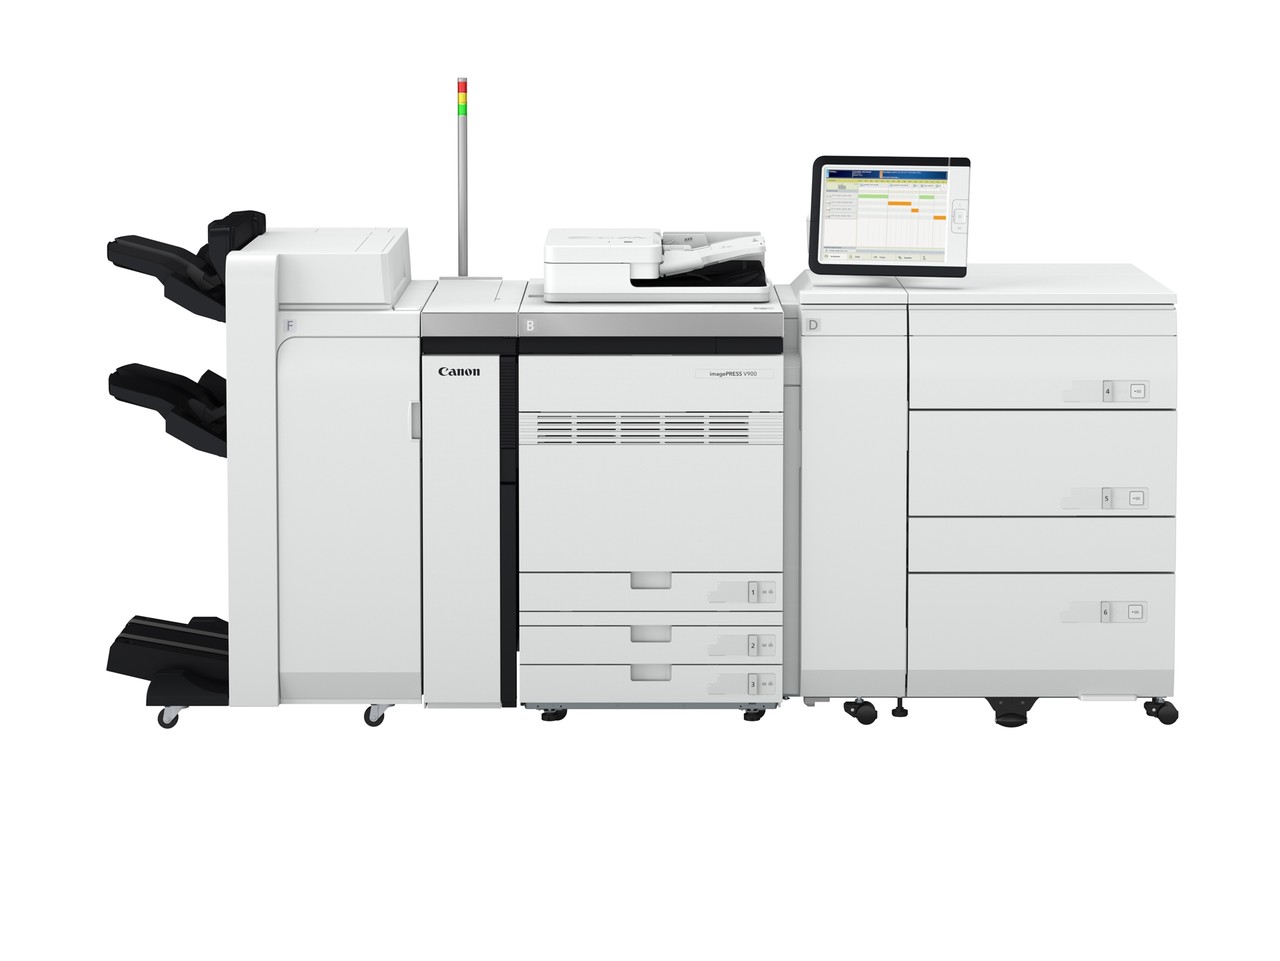 컬러 디지털 상업 인쇄기 ‘imagePRESS V900’ 시리즈